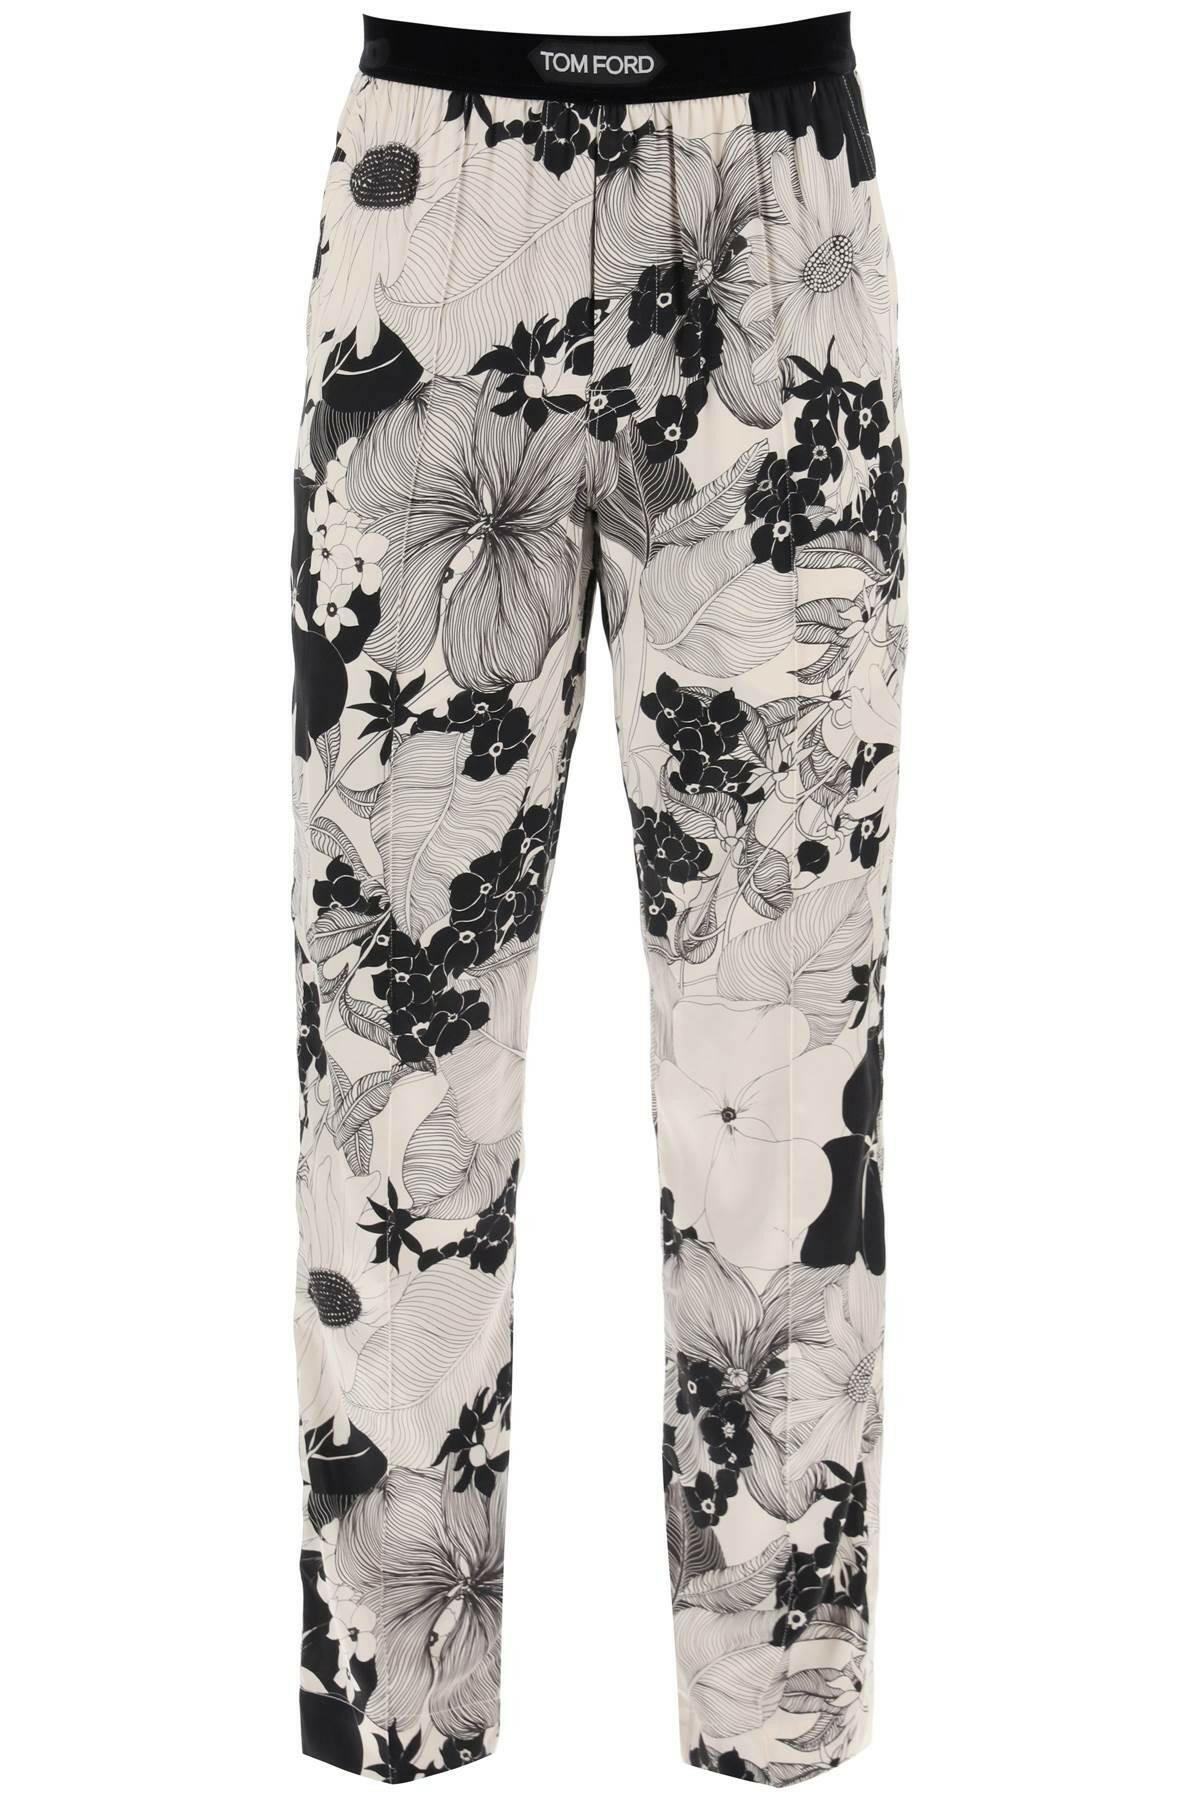 Tom Ford Pajama Pants In Floral Silk - JOHN JULIA